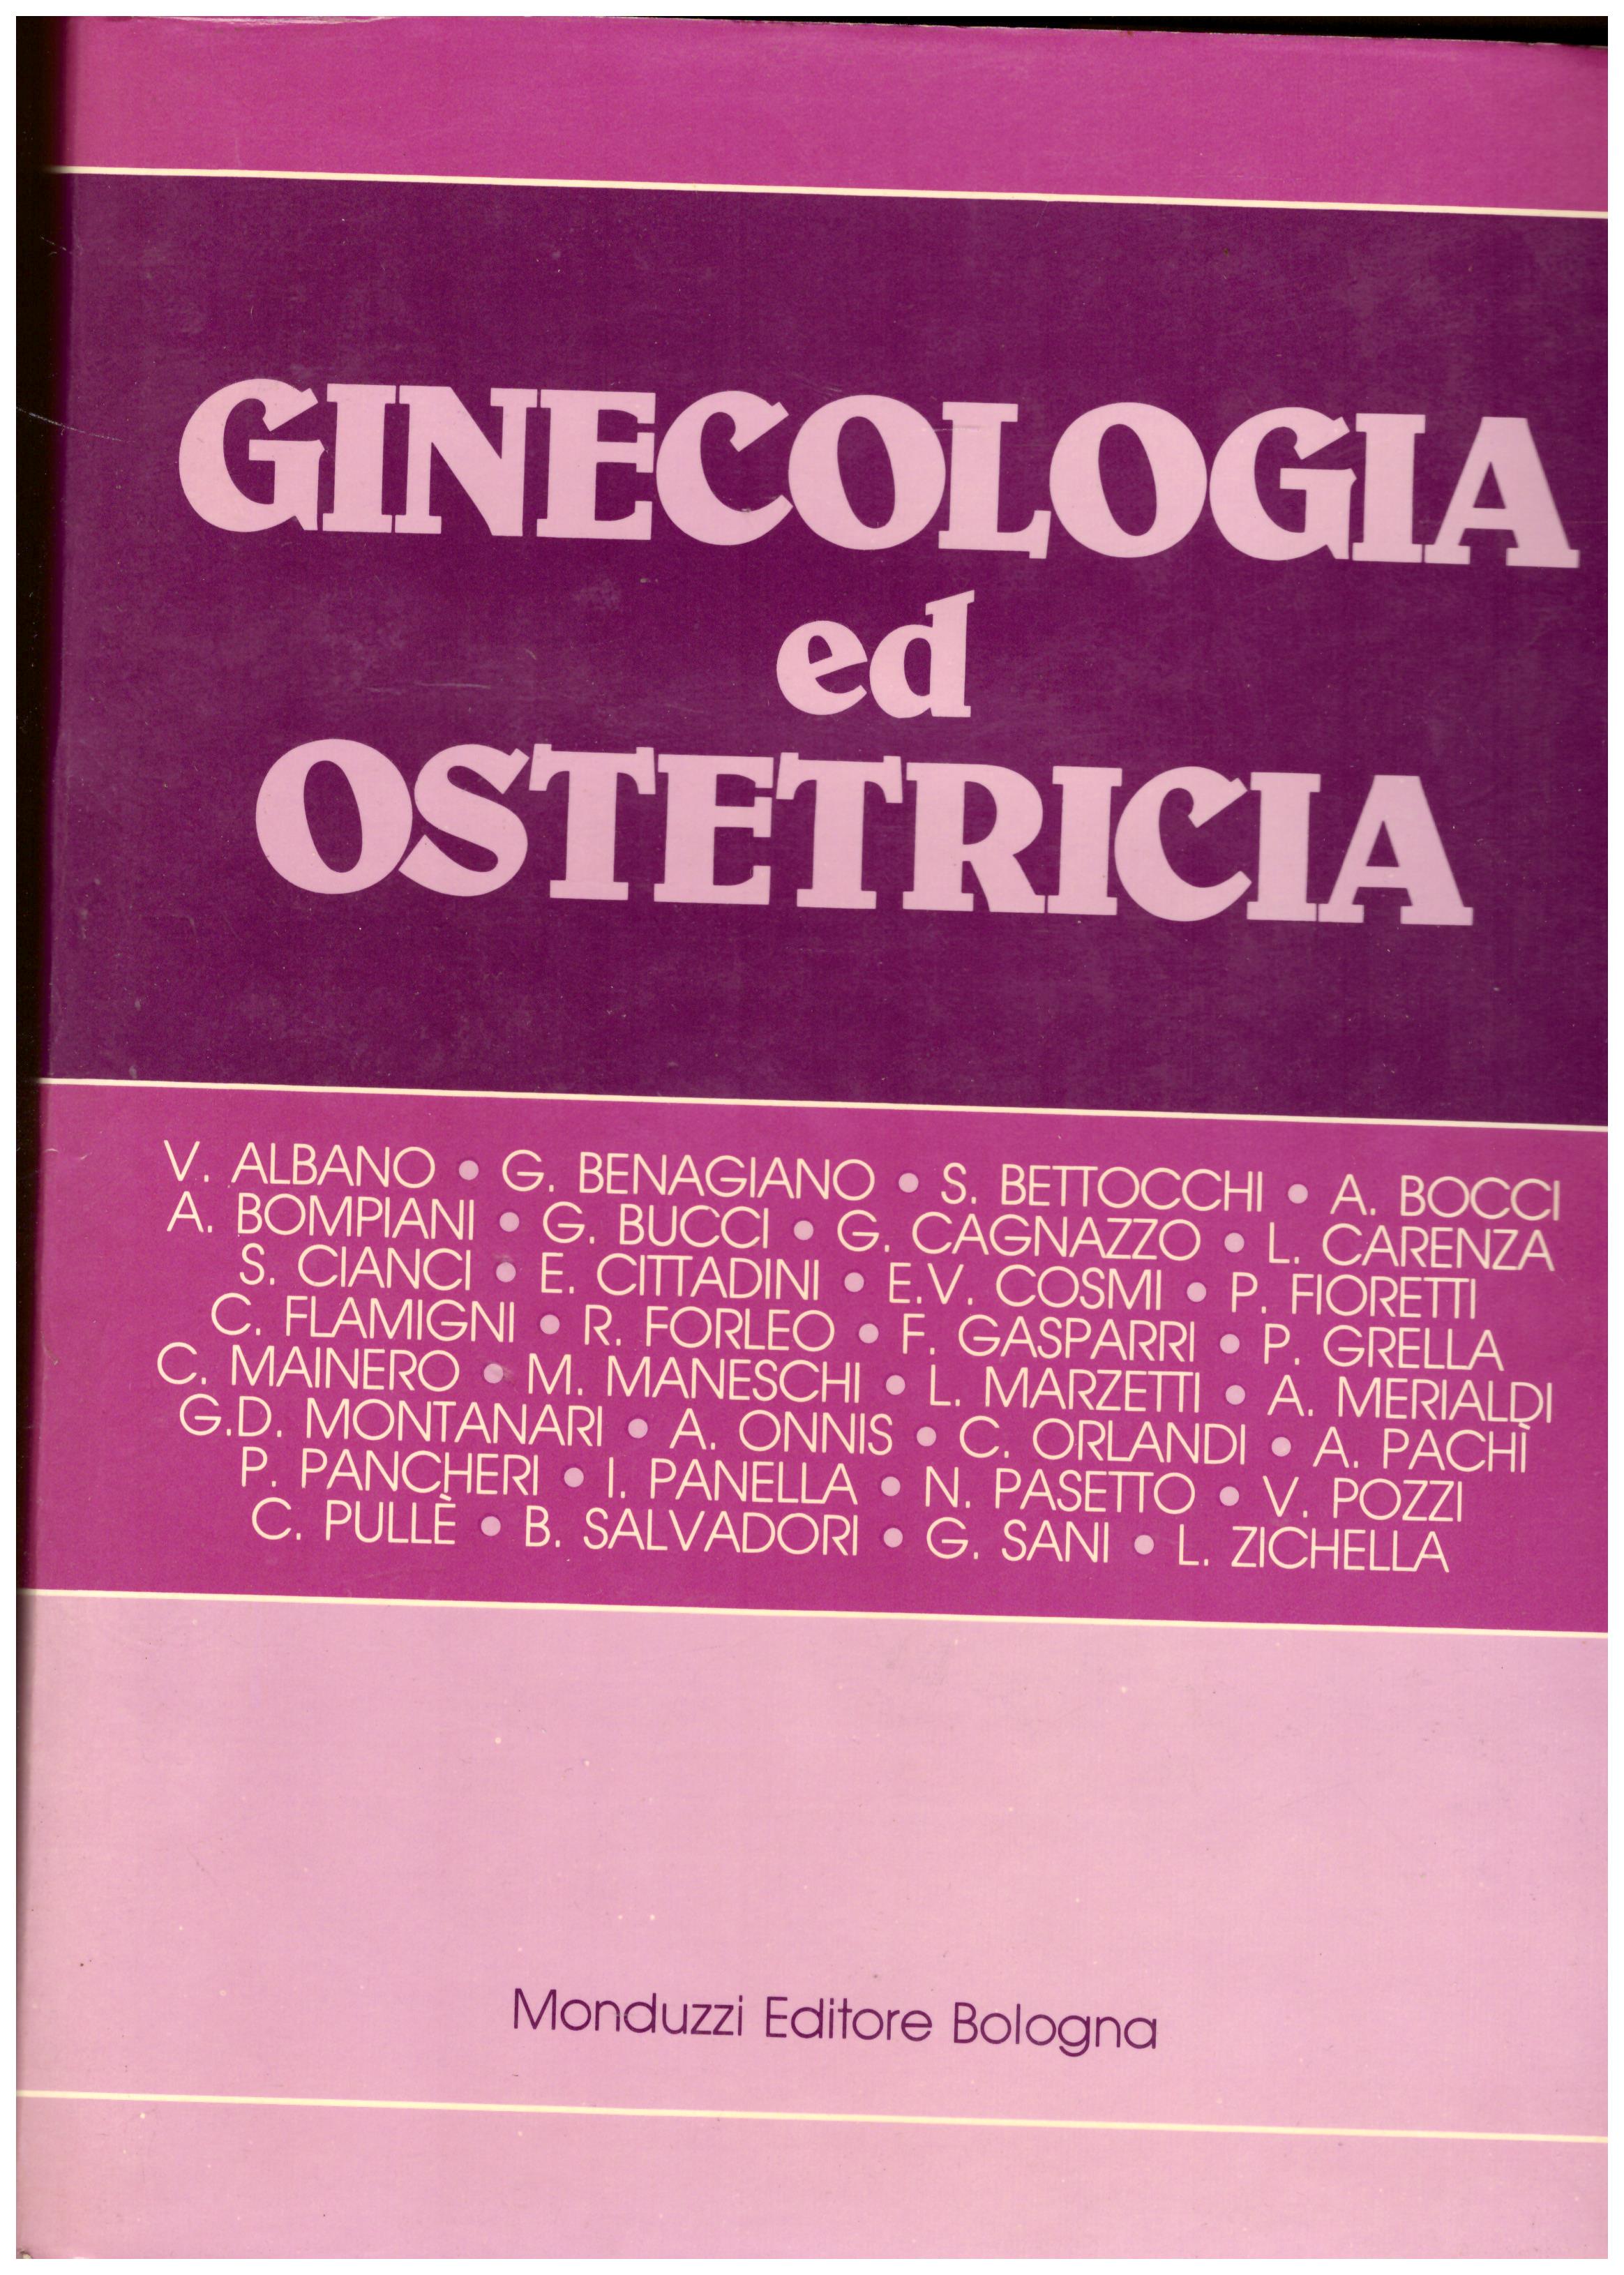 Titolo: Ginecologia ed ostetricia Autore: AA.VV. Editore: Monduzzi editore, Bologna 1982